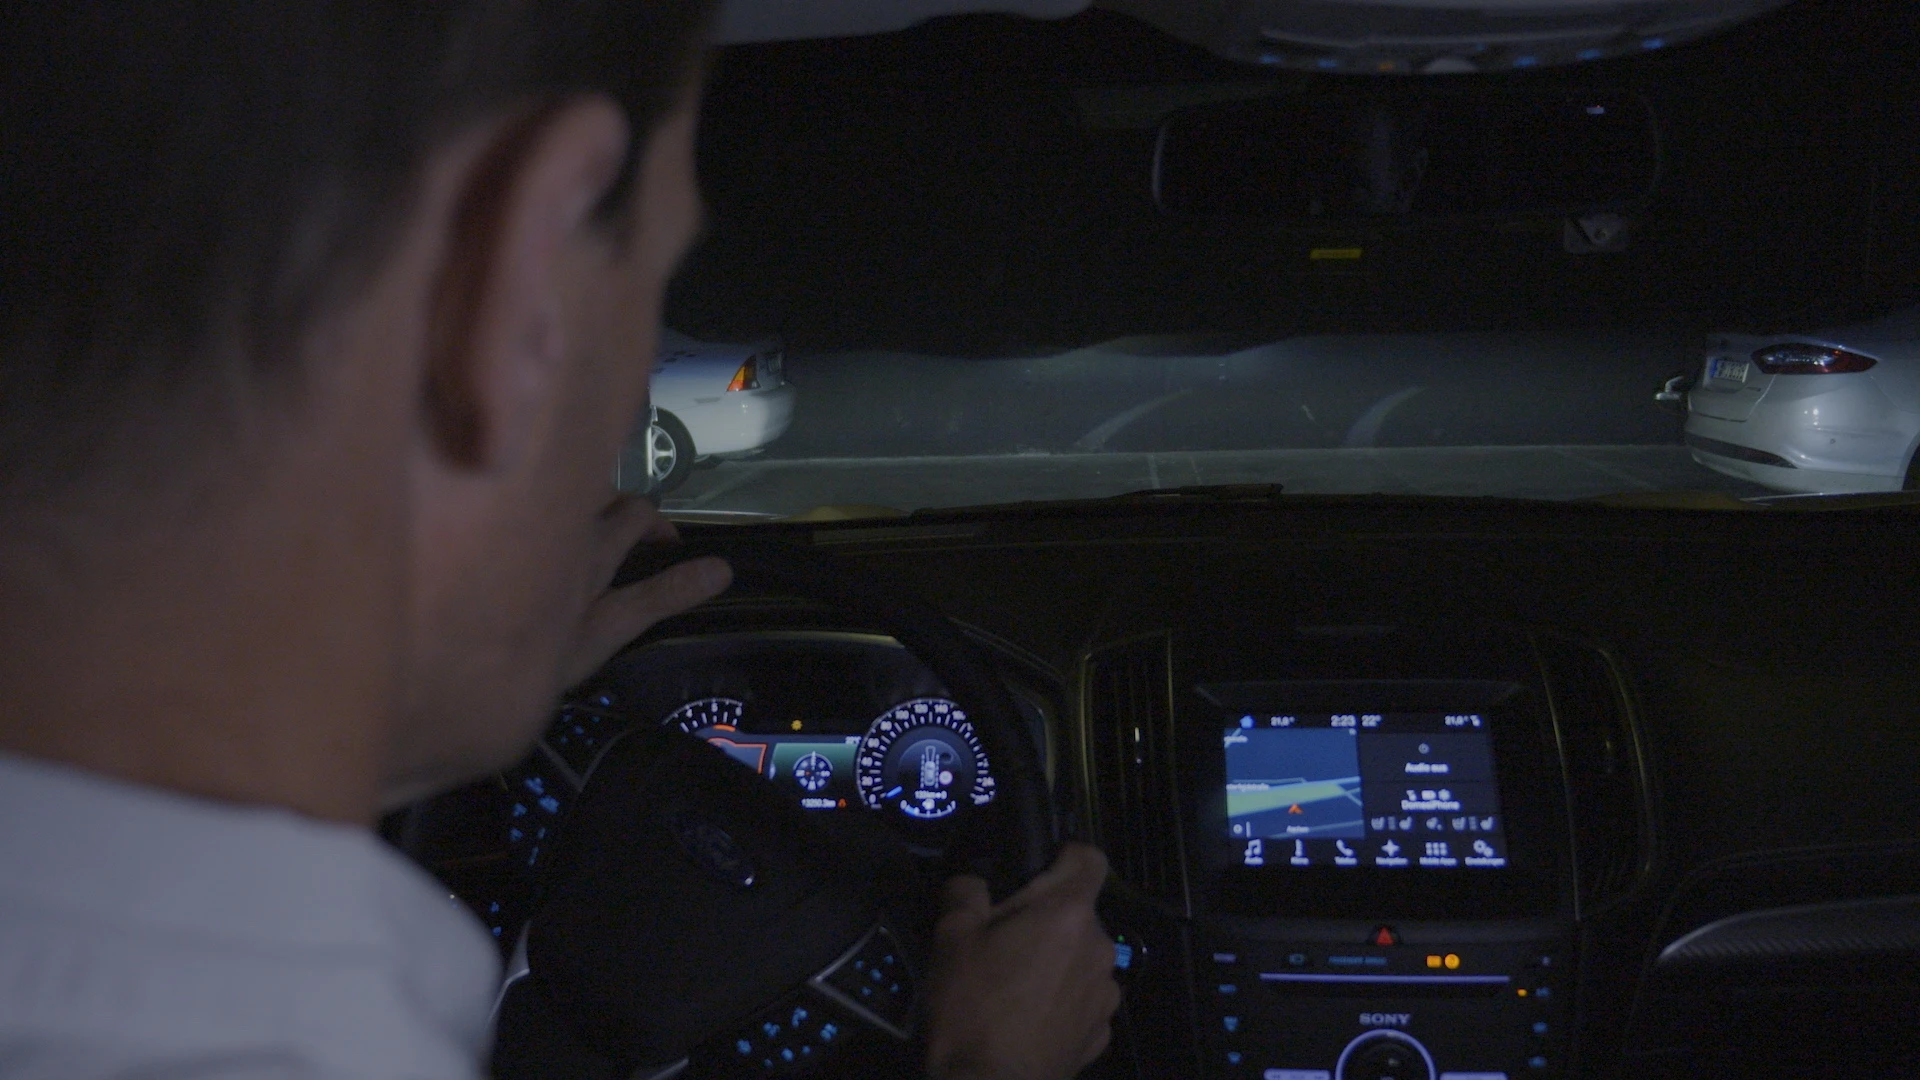 Ford tester ny sikkerhedsteknologi med trafikinformation projekteret direkte på vejen